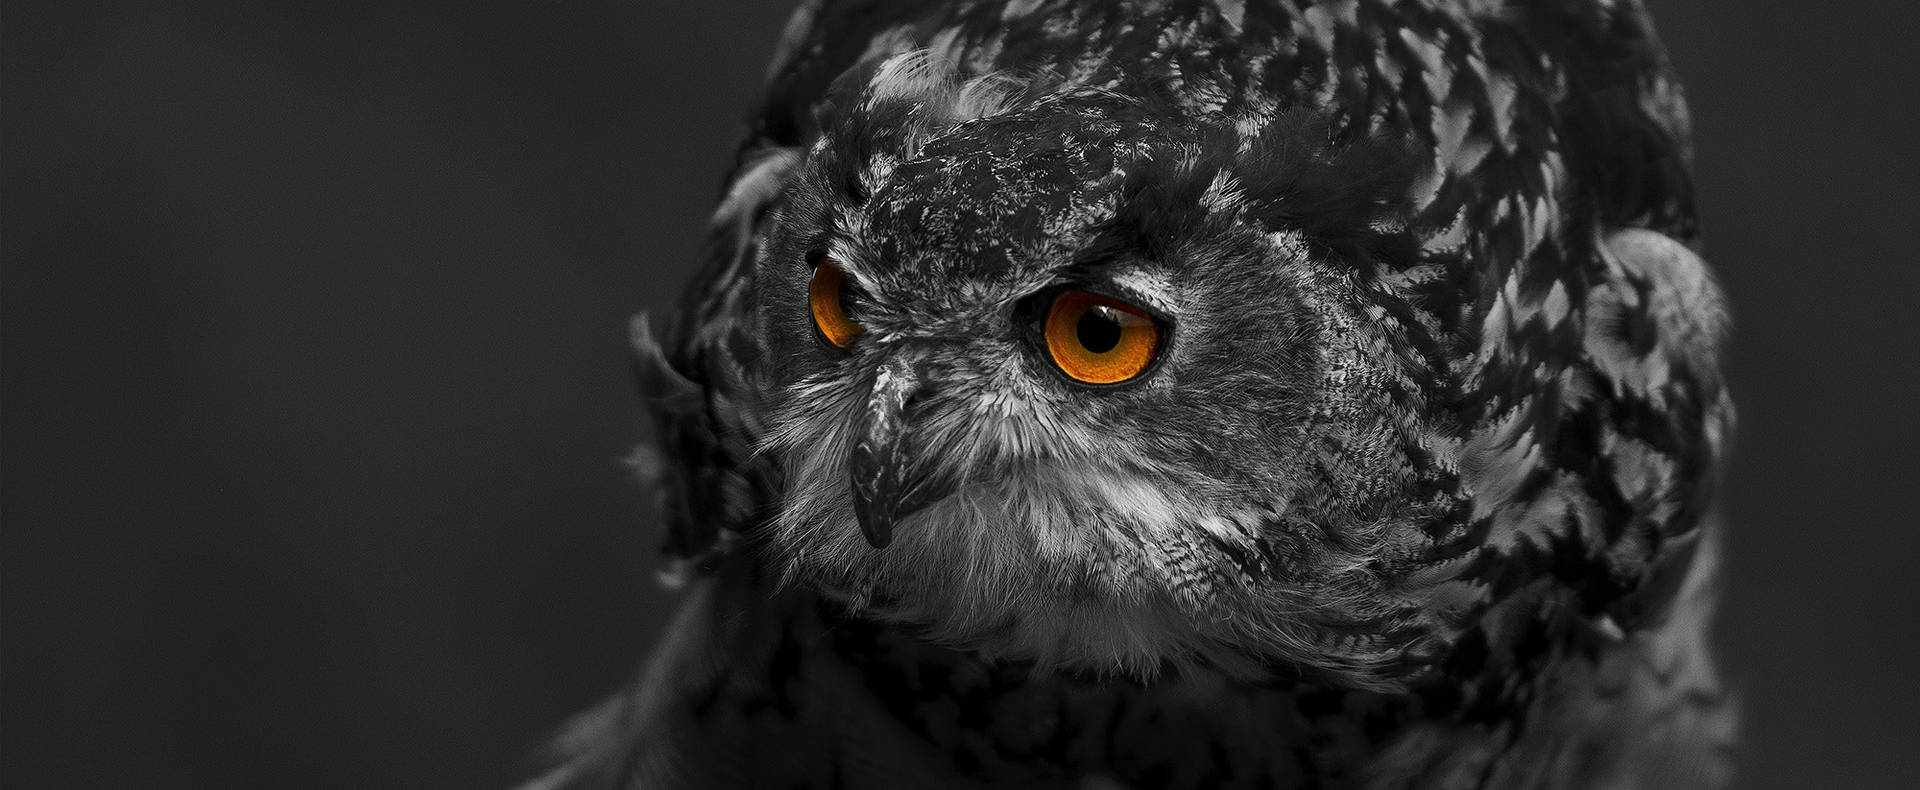 An owl's intent gaze amidst a swirl of darkness Wallpaper